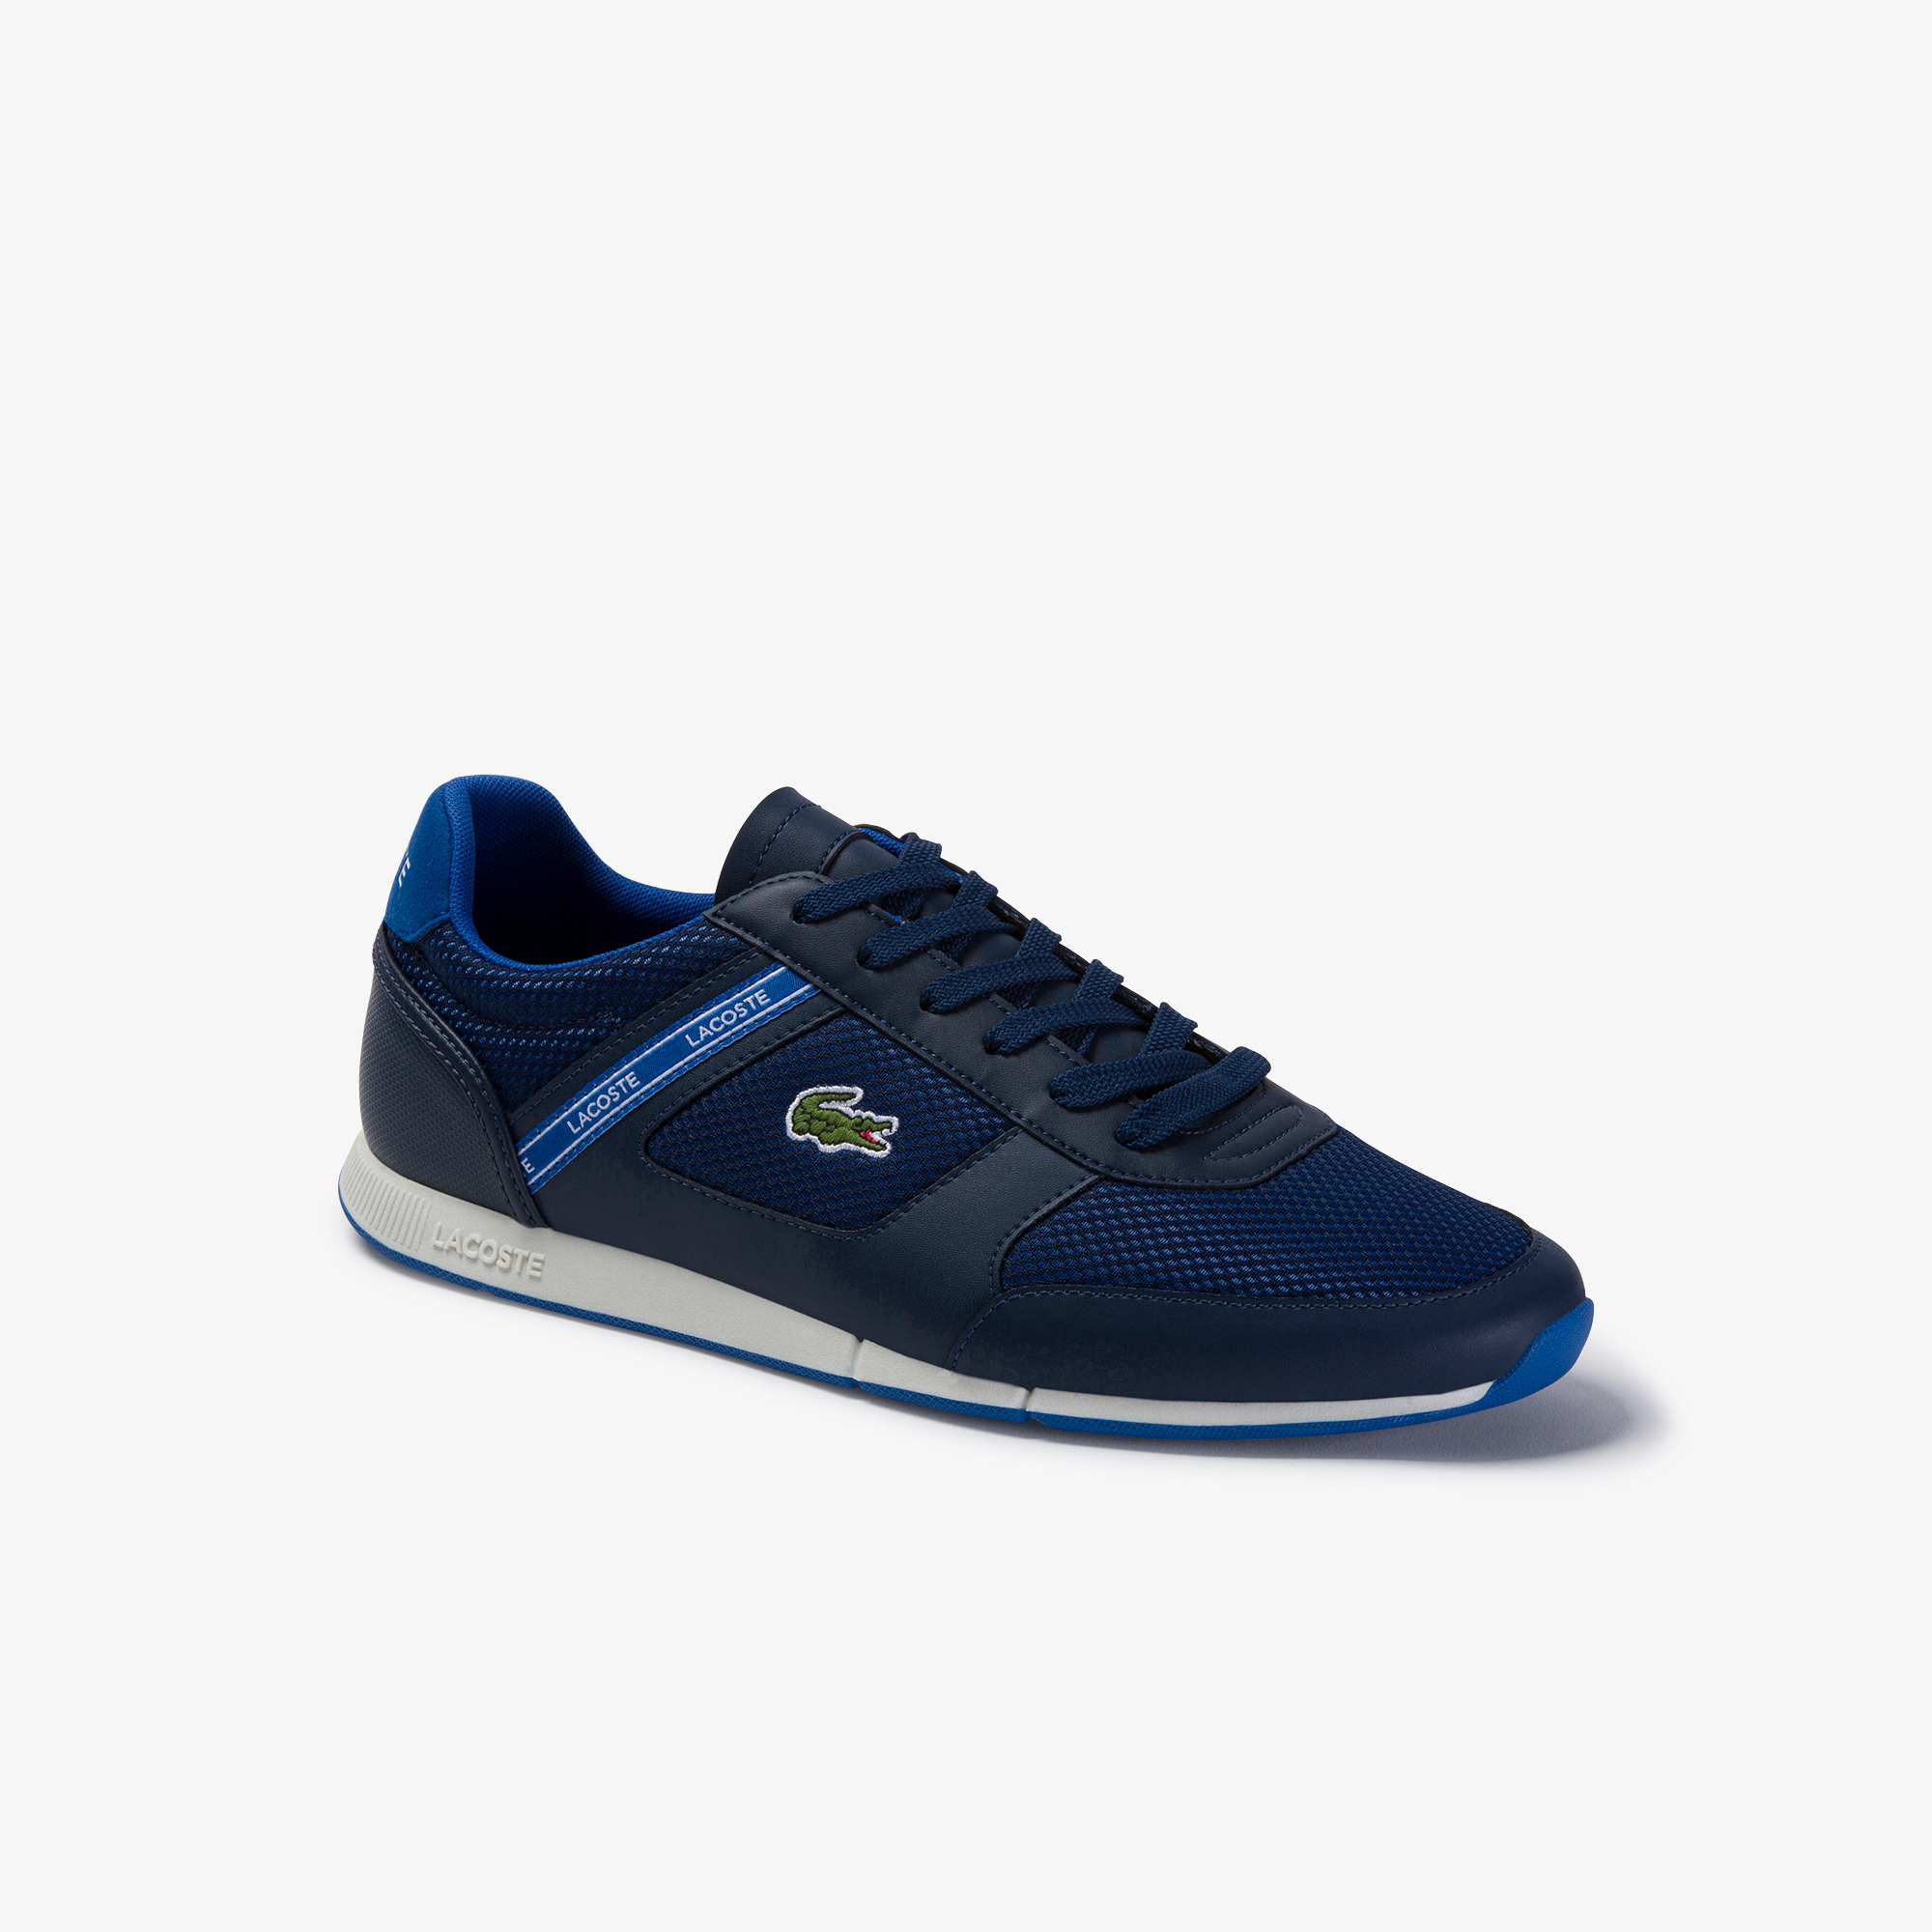 Lacoste Menerva Sport 120 1 Cma Erkek Lacivert - Mavi Ayakkabı. 1